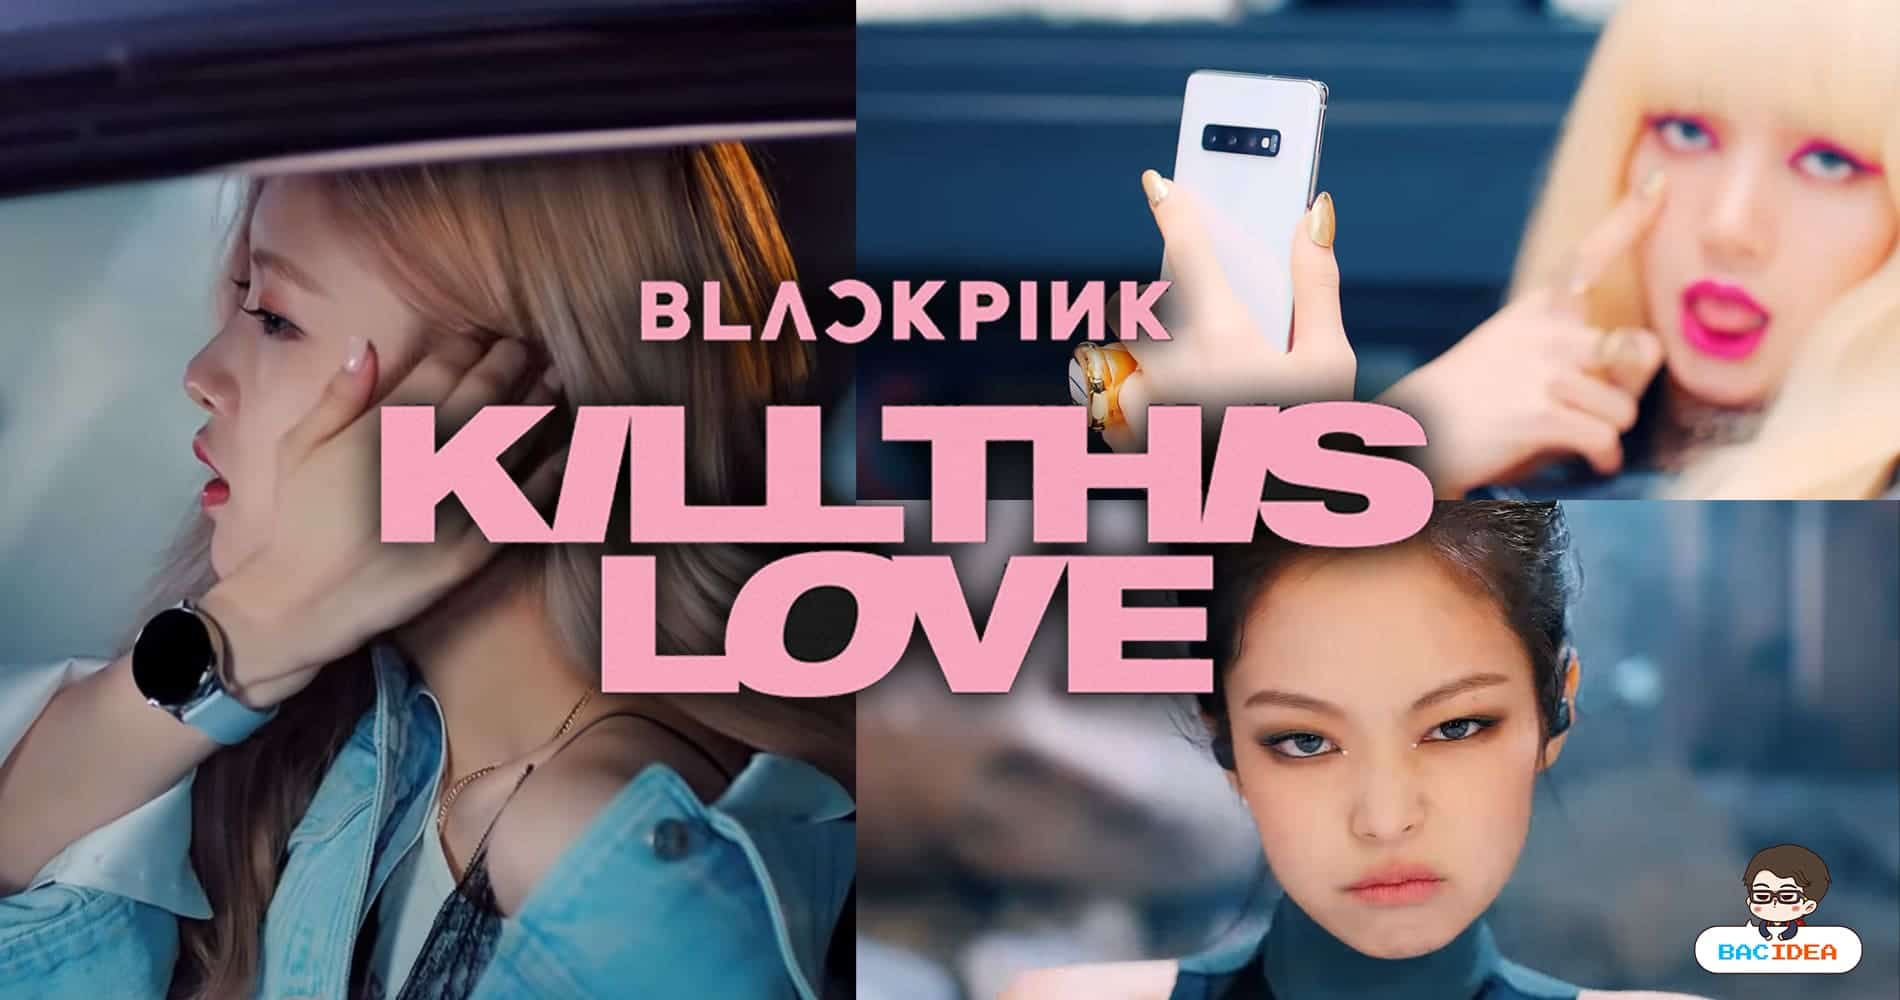 “Kill This Love” MV ล่าสุดจาก BLACKPINK ที่ไม่ใช่แค่การ Tie In ซัมซุง 1